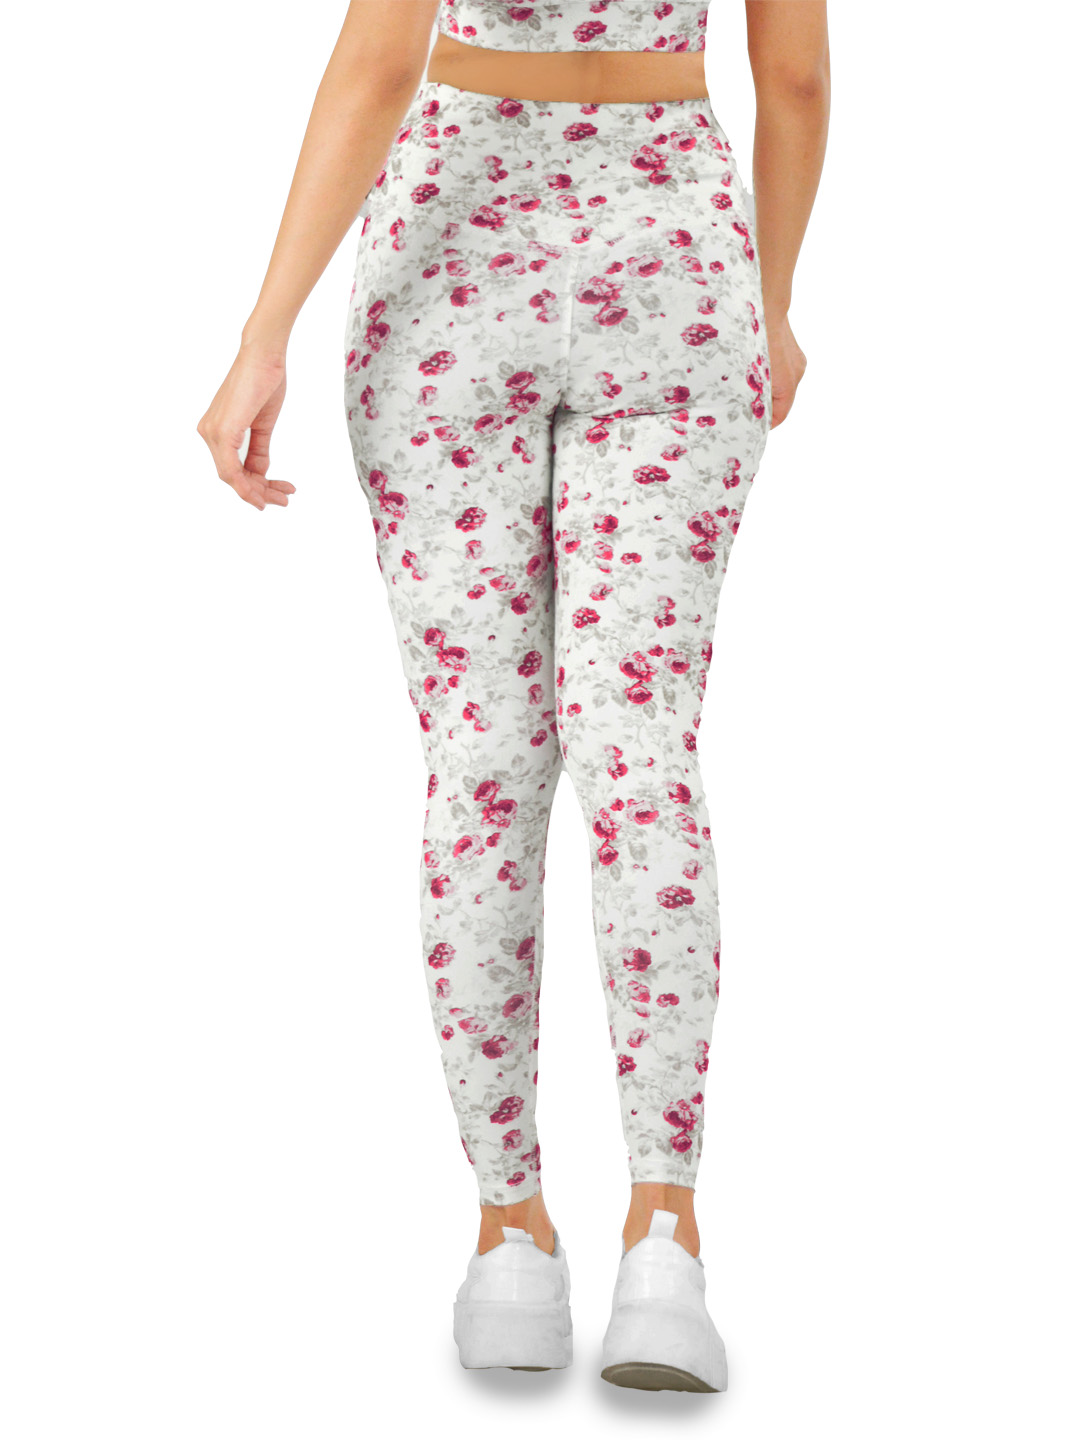 mimi white flower patterned leggings - back view